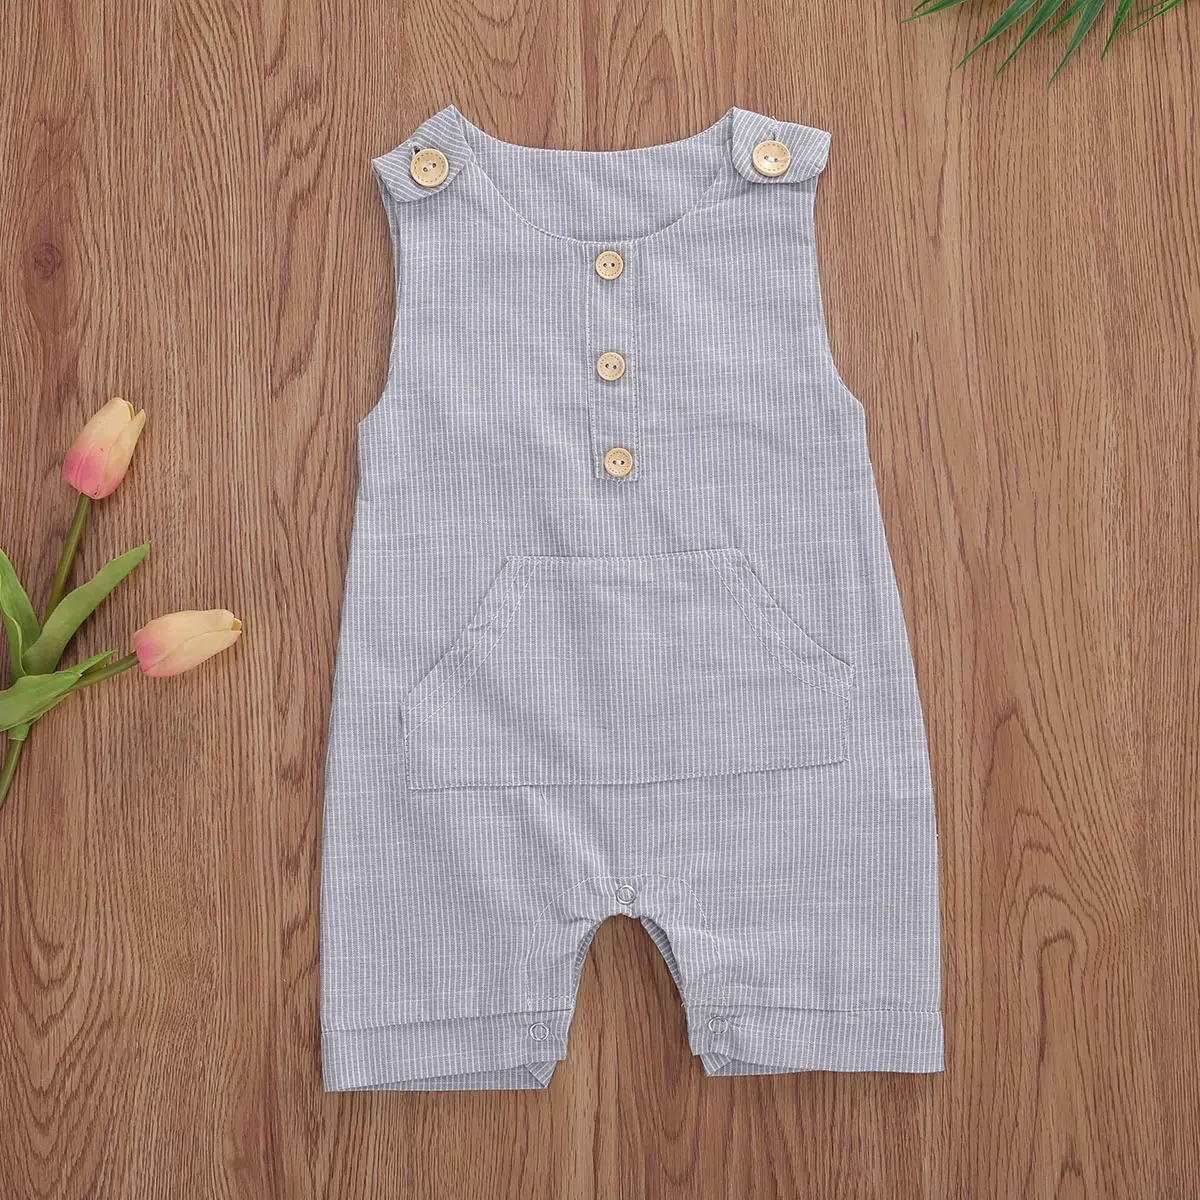 2020 התינוק קיץ בגדי התינוק הנולד בנים כפתורים פסים רומפר אופנה שרוולים רומפר כותנה פשתן סרבל - 4